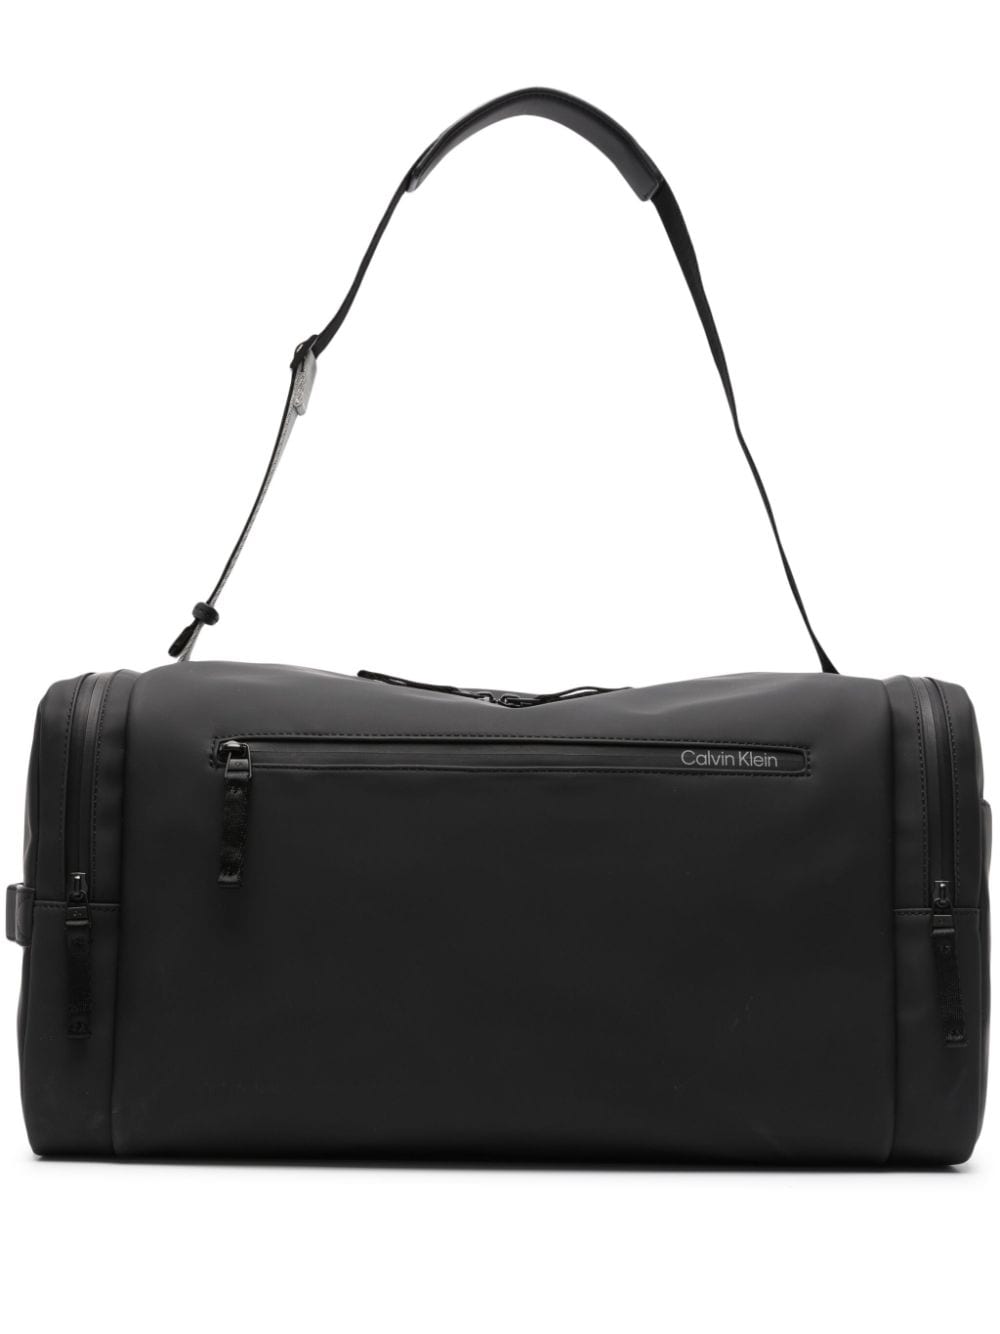 Image 1 of Calvin Klein Weekender duffle bag